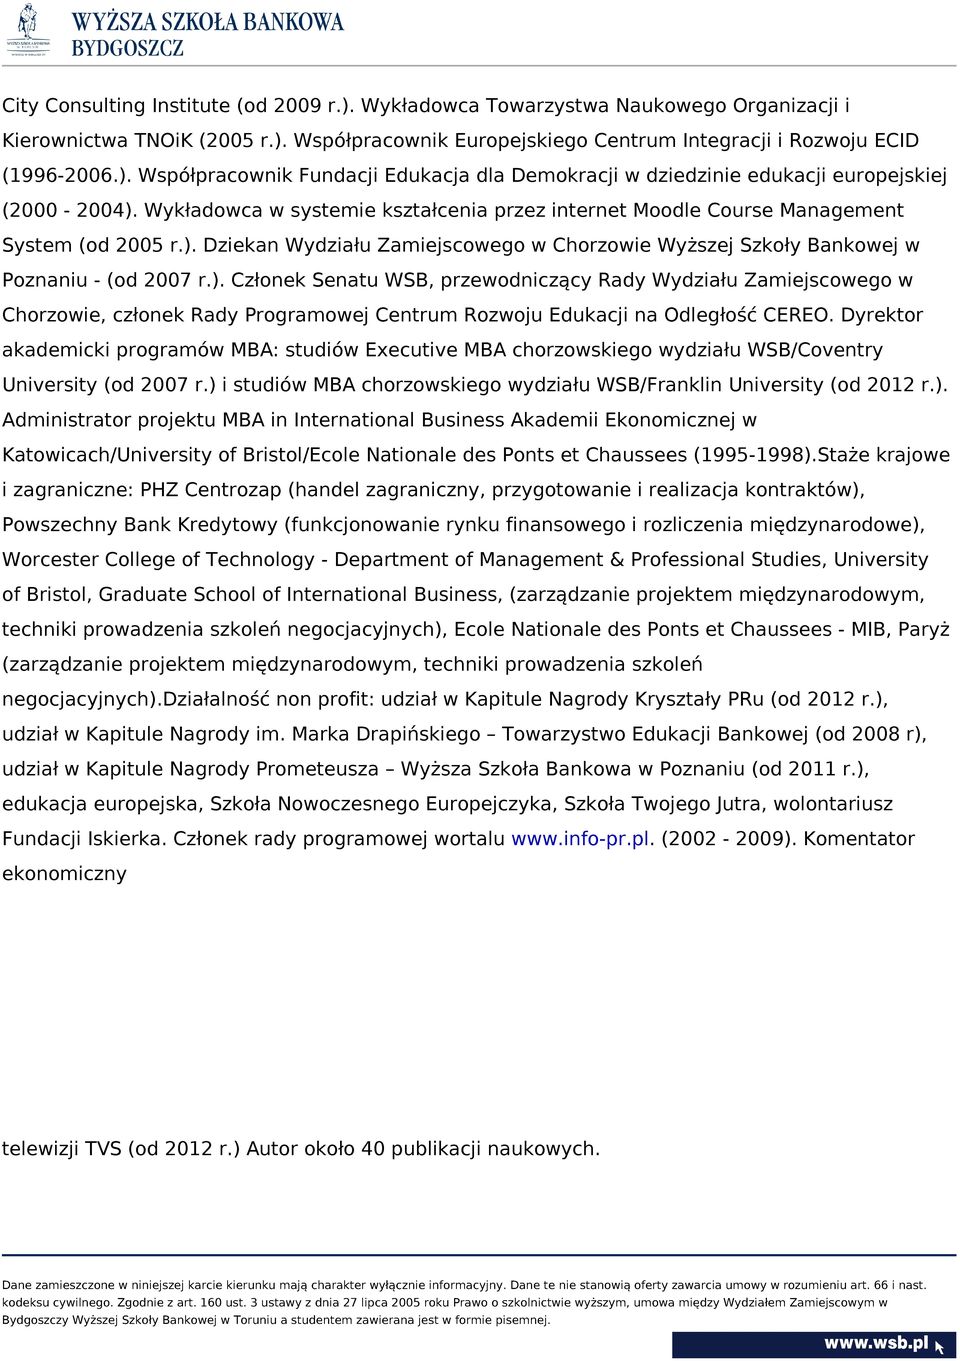 Dziekan Wydziału Zamiejscowego w Chorzowie Wyższej Szkoły Bankowej w Poznaniu - (od 2007 r.).